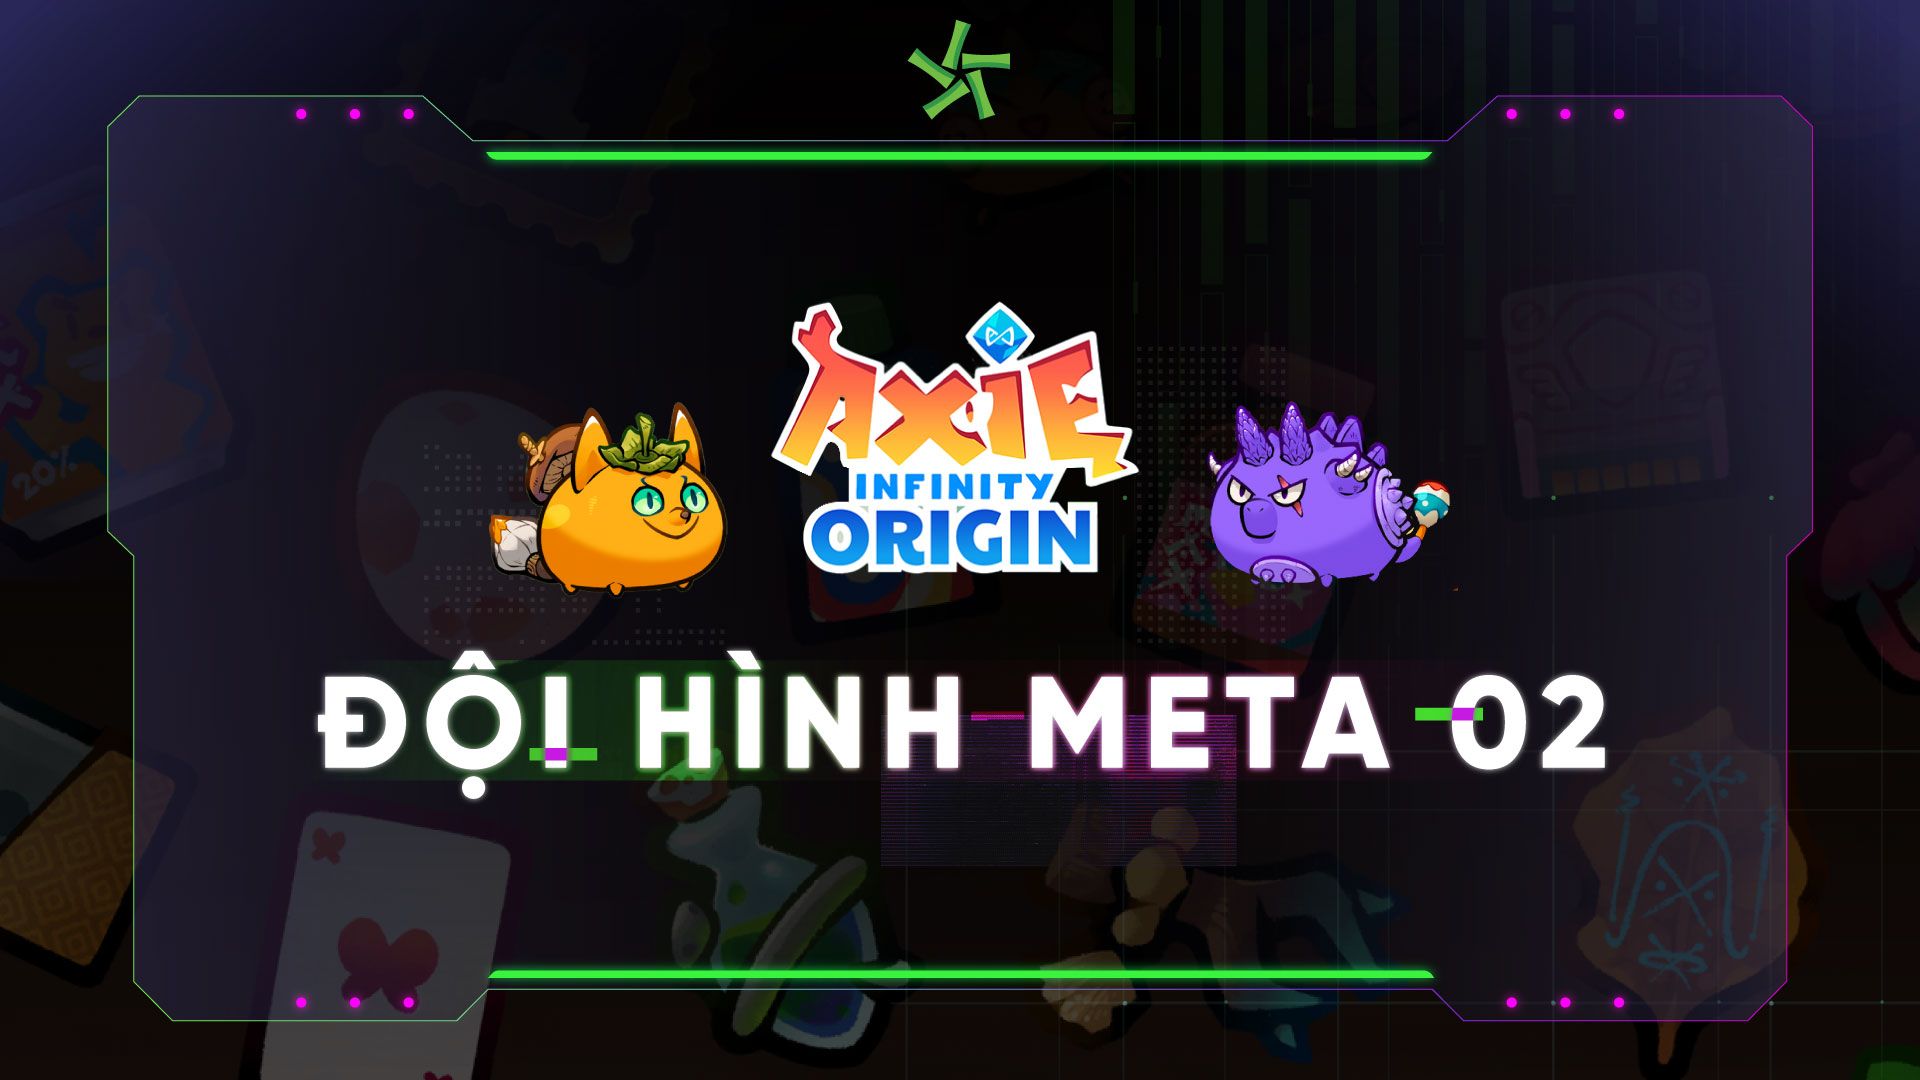 Đội hình Meta 02 trong Axie Infinity Origin - Triple Green Thorns